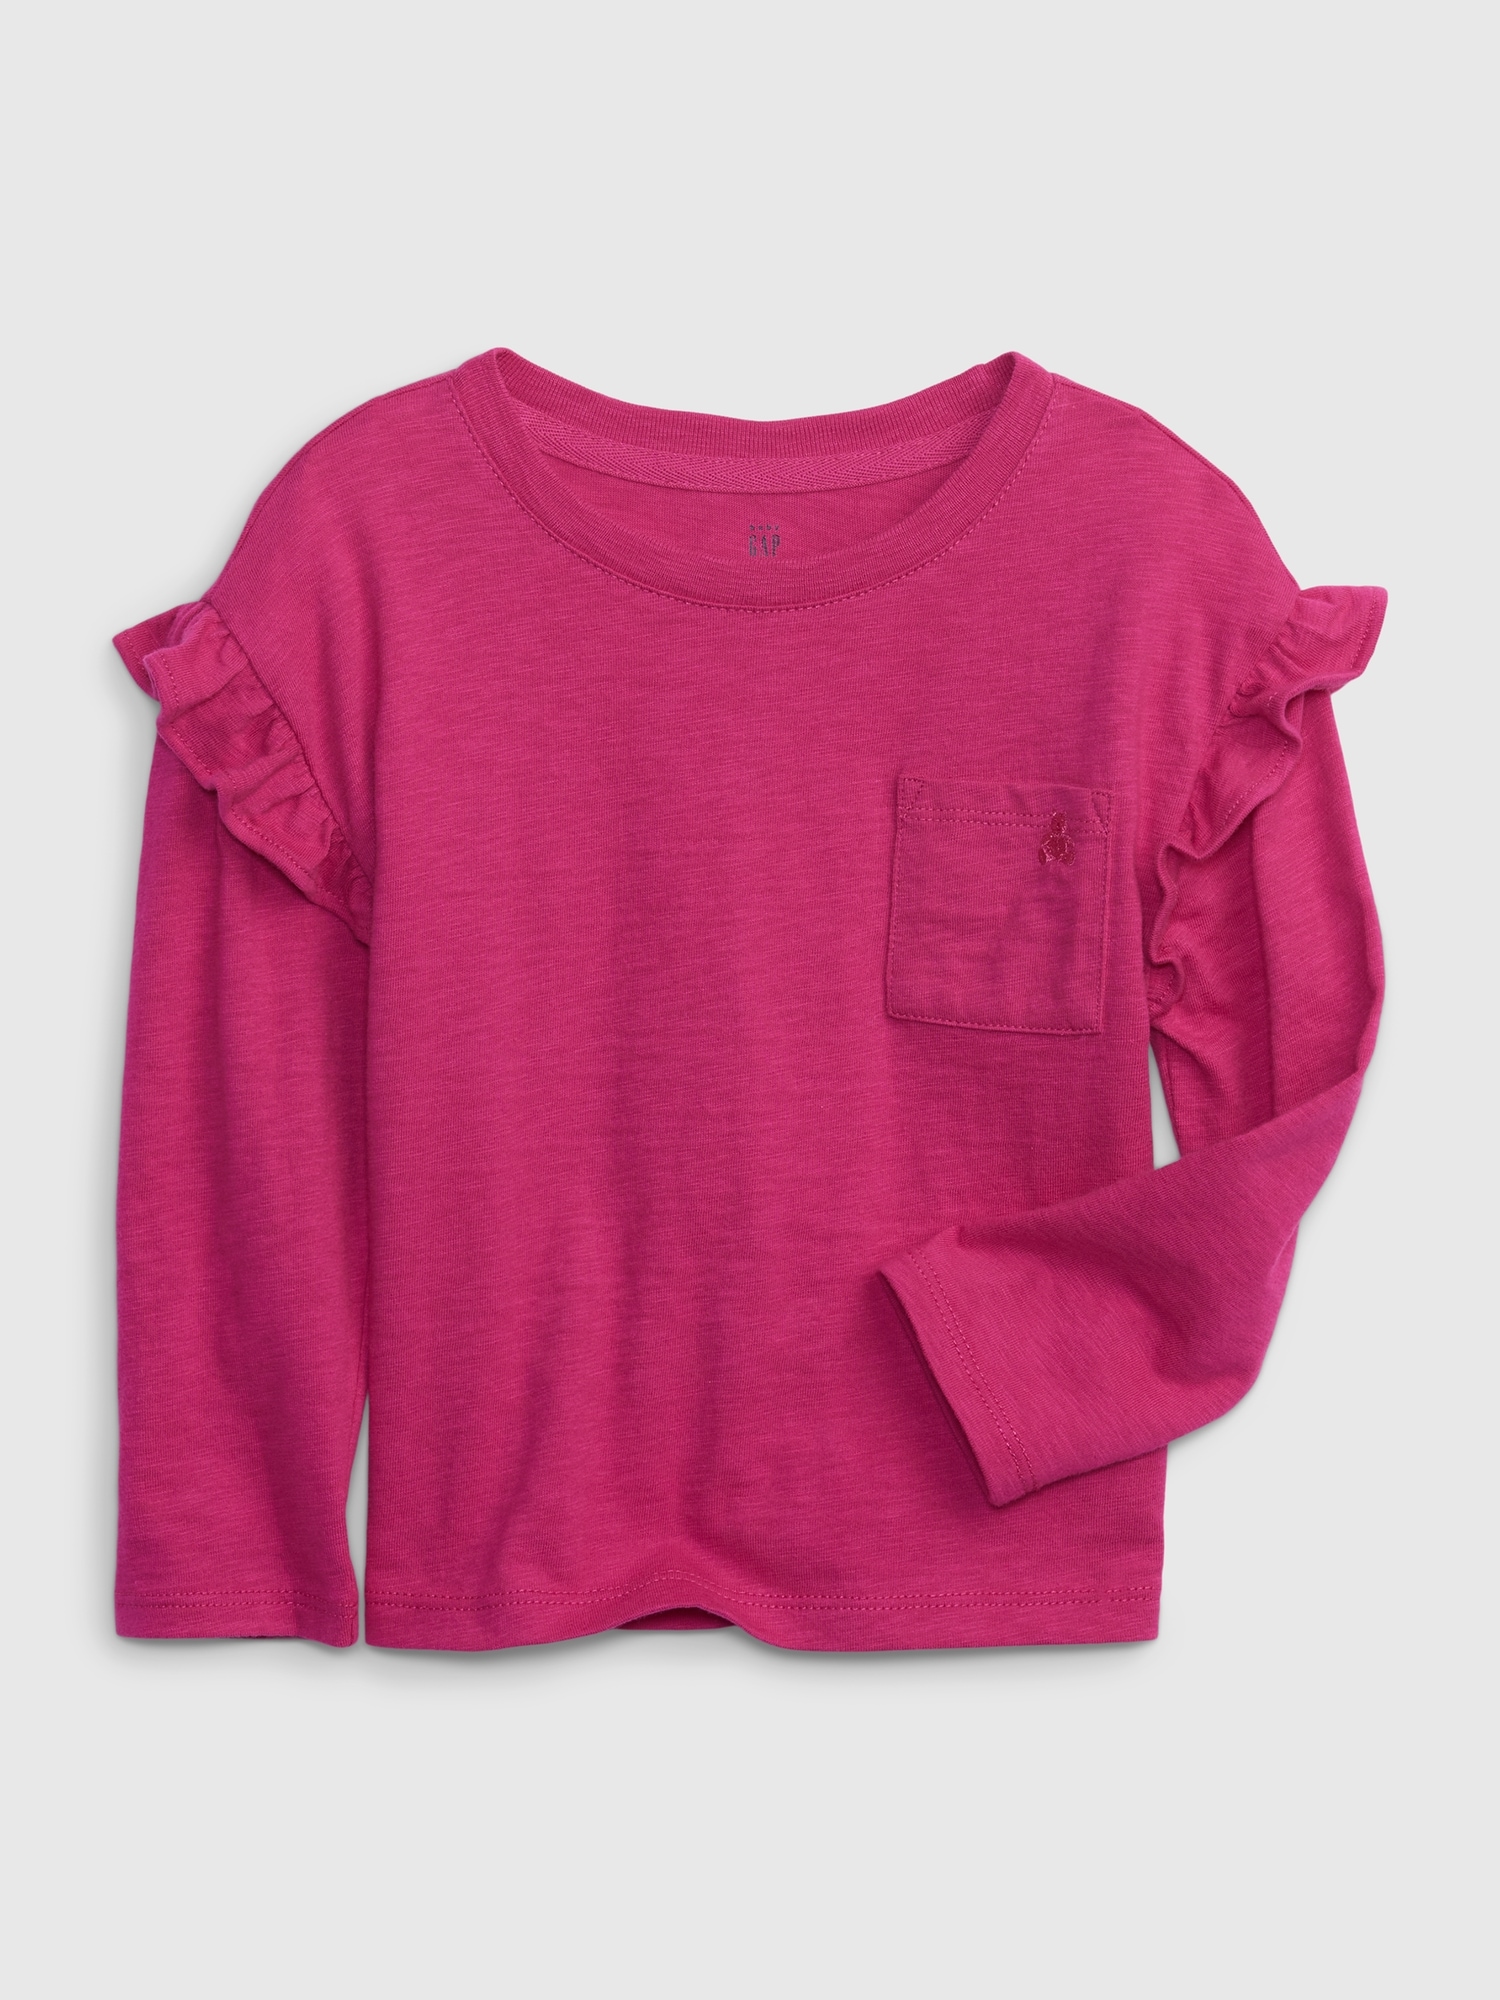 Toddler Organic Cotton Ruffle Pocket T-Shirt | Gap